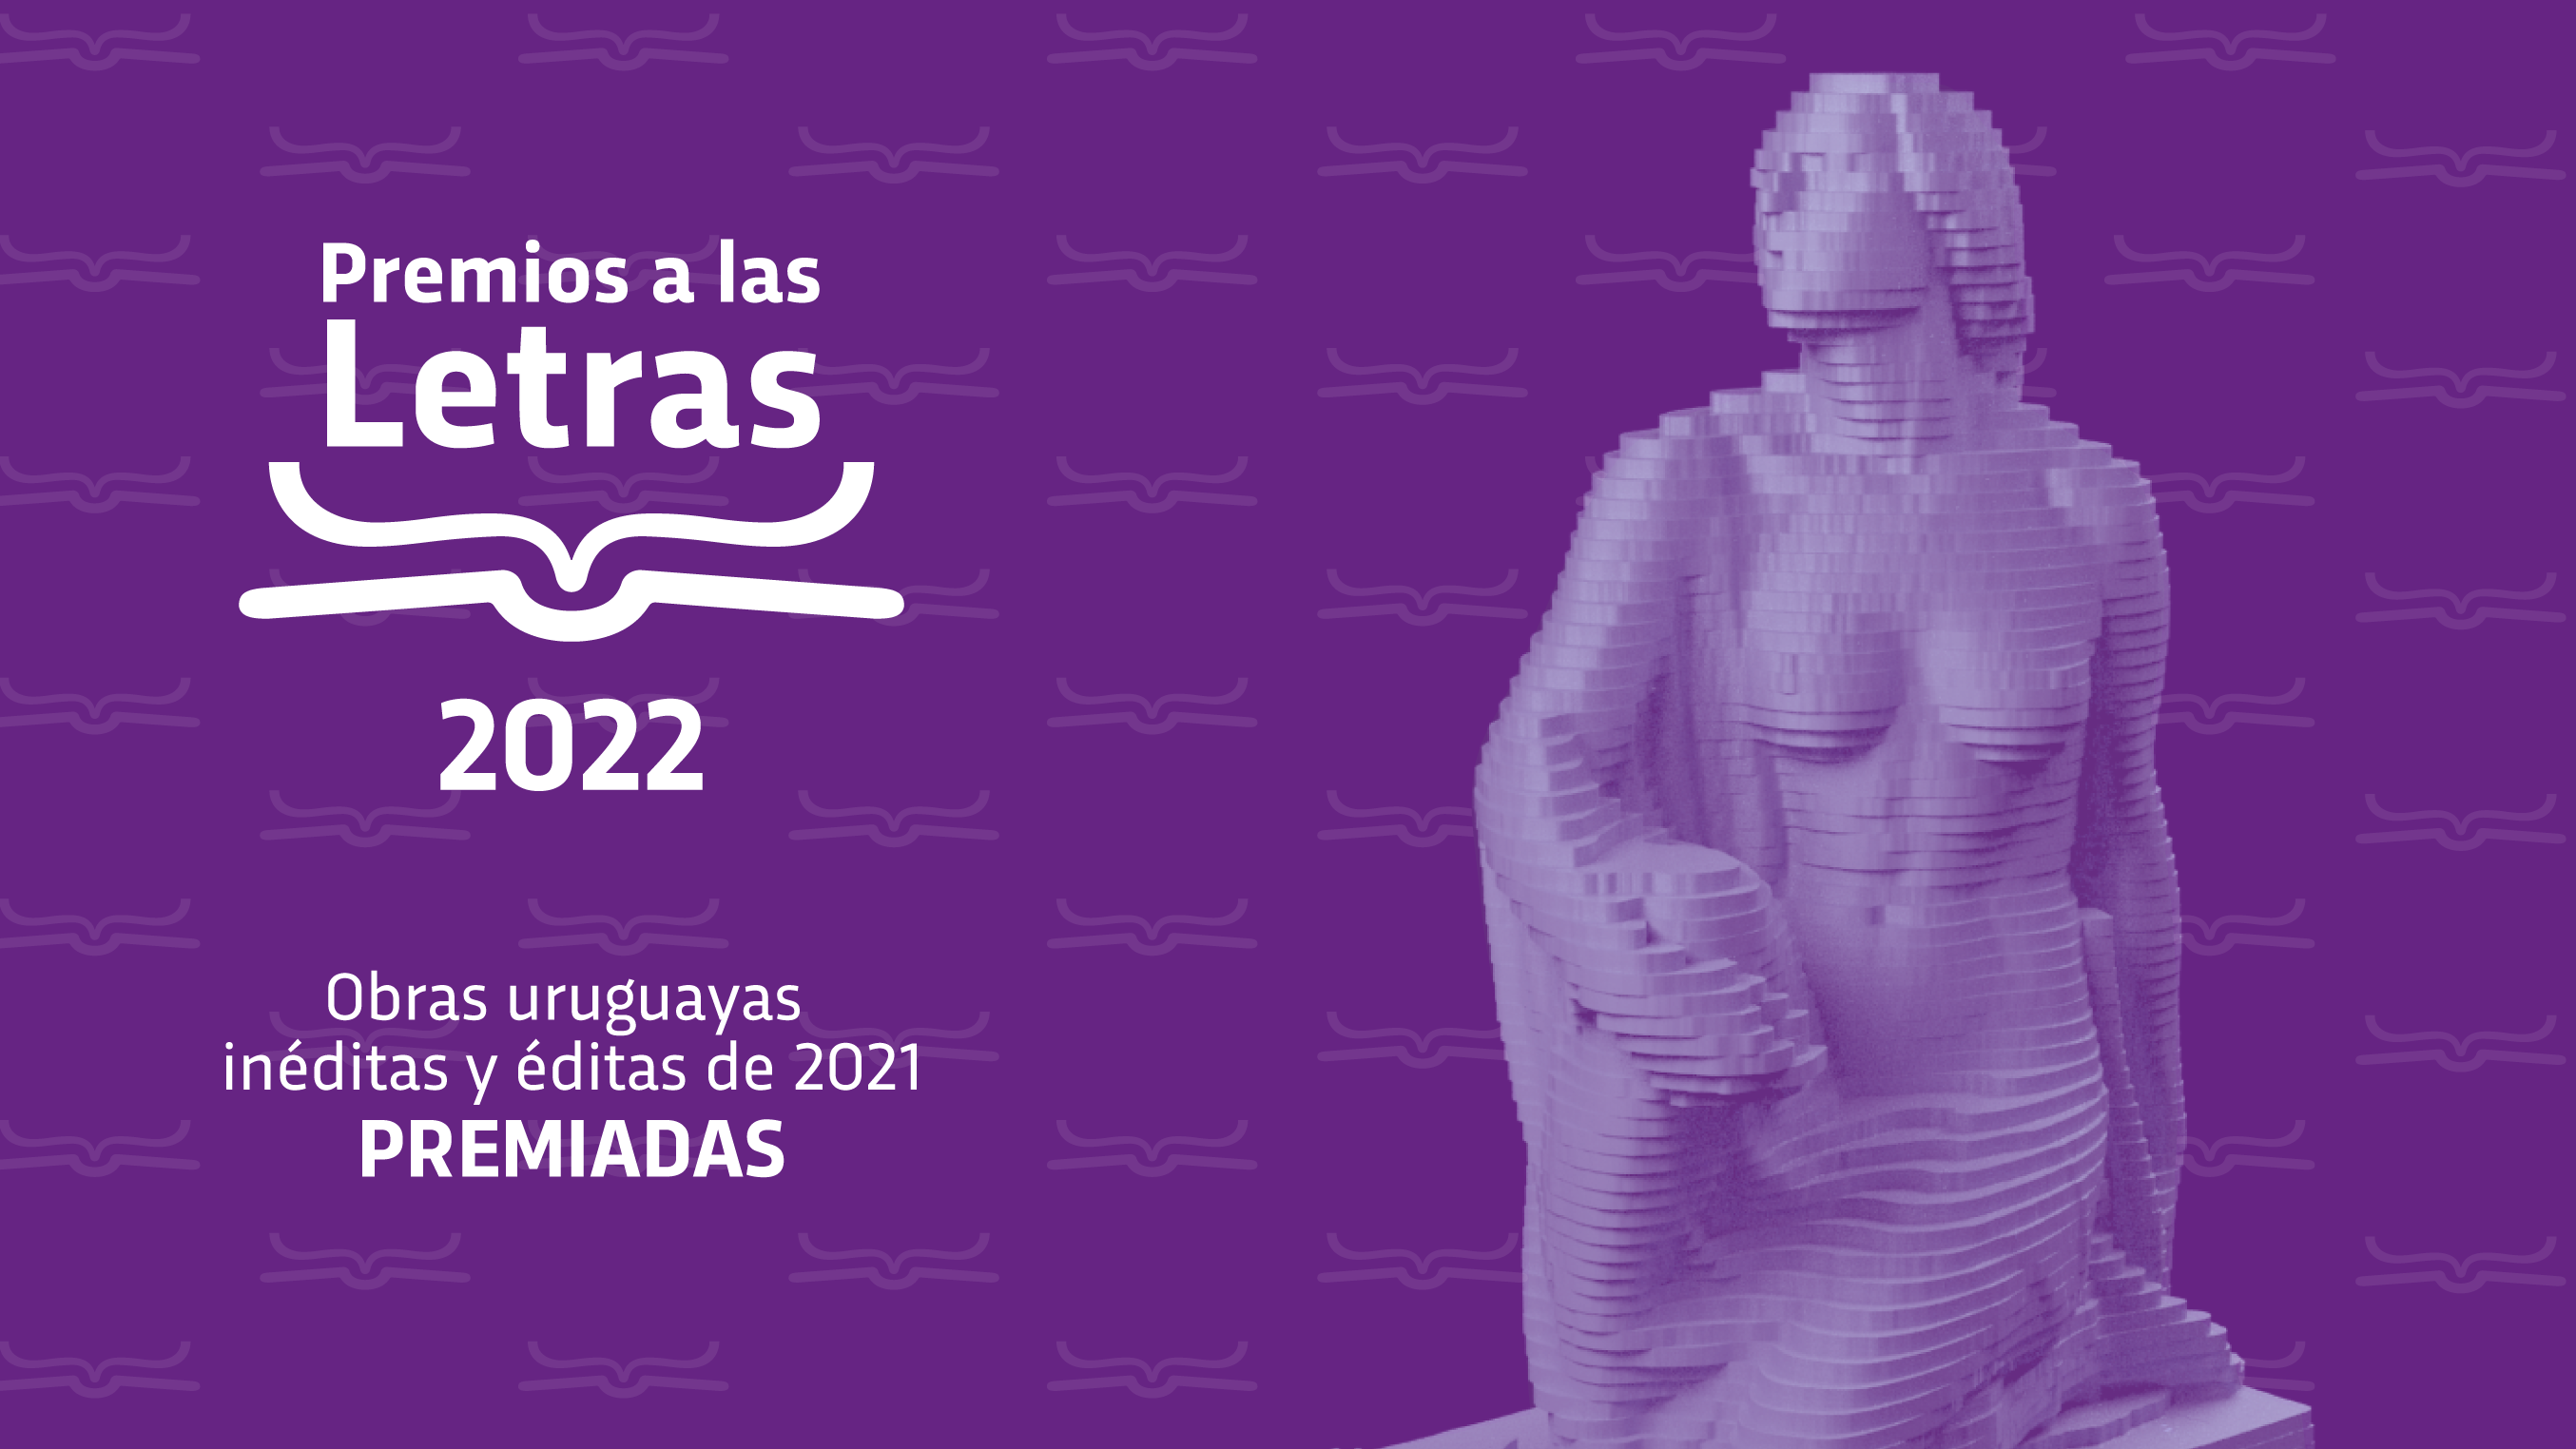 Premios a las Letras 2022 - Obras premiadas